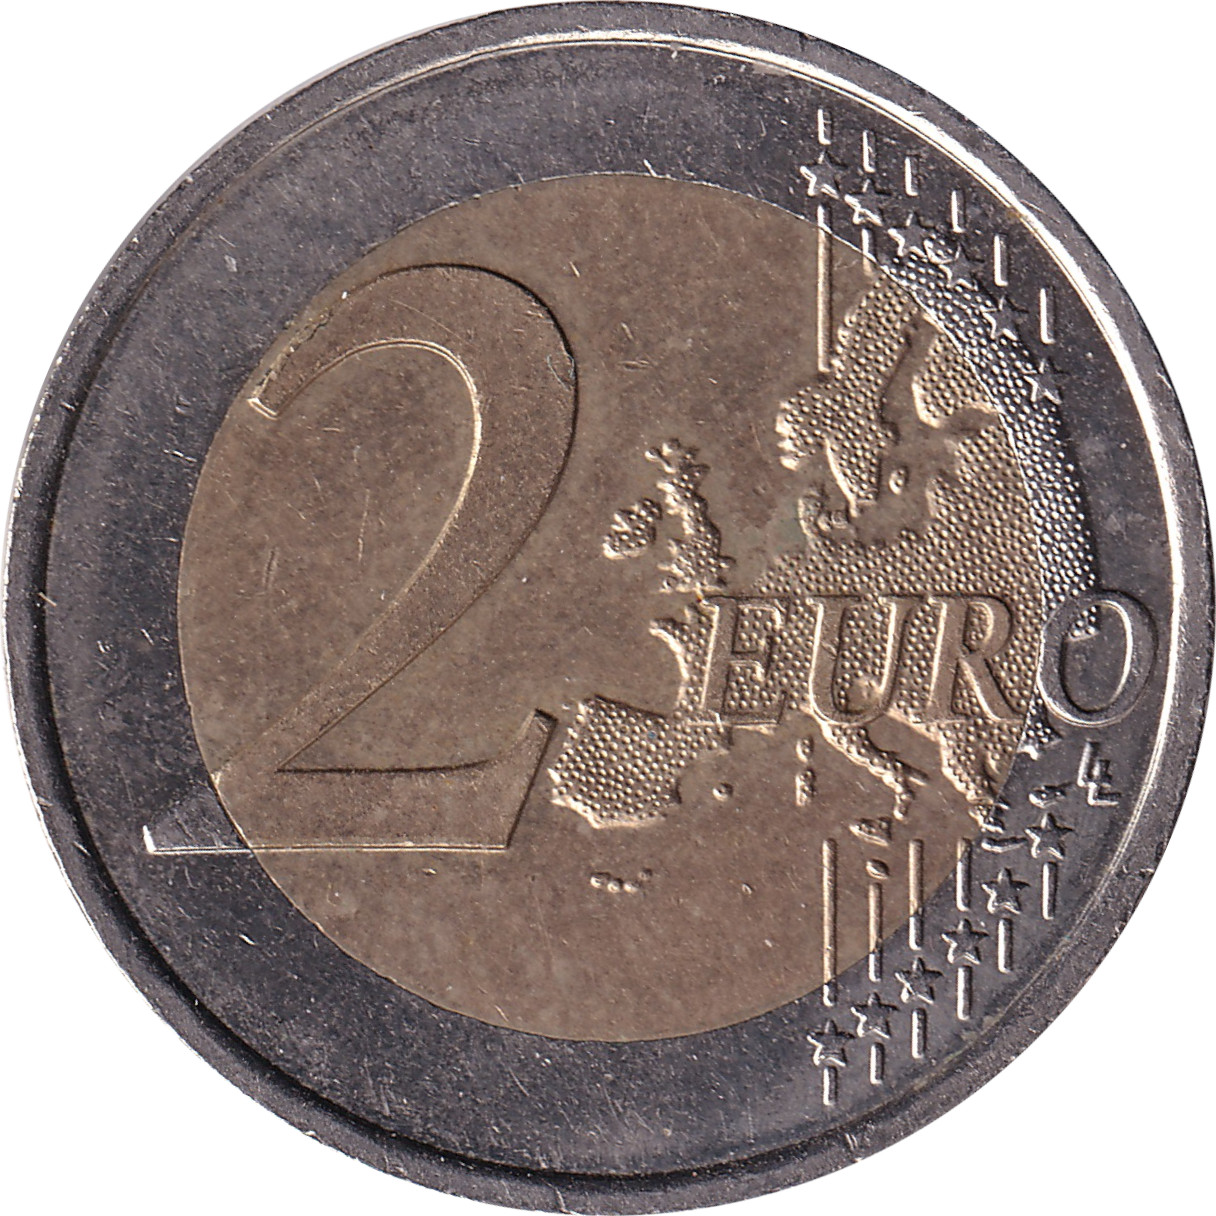 2 euro - Union Économique Monétaire